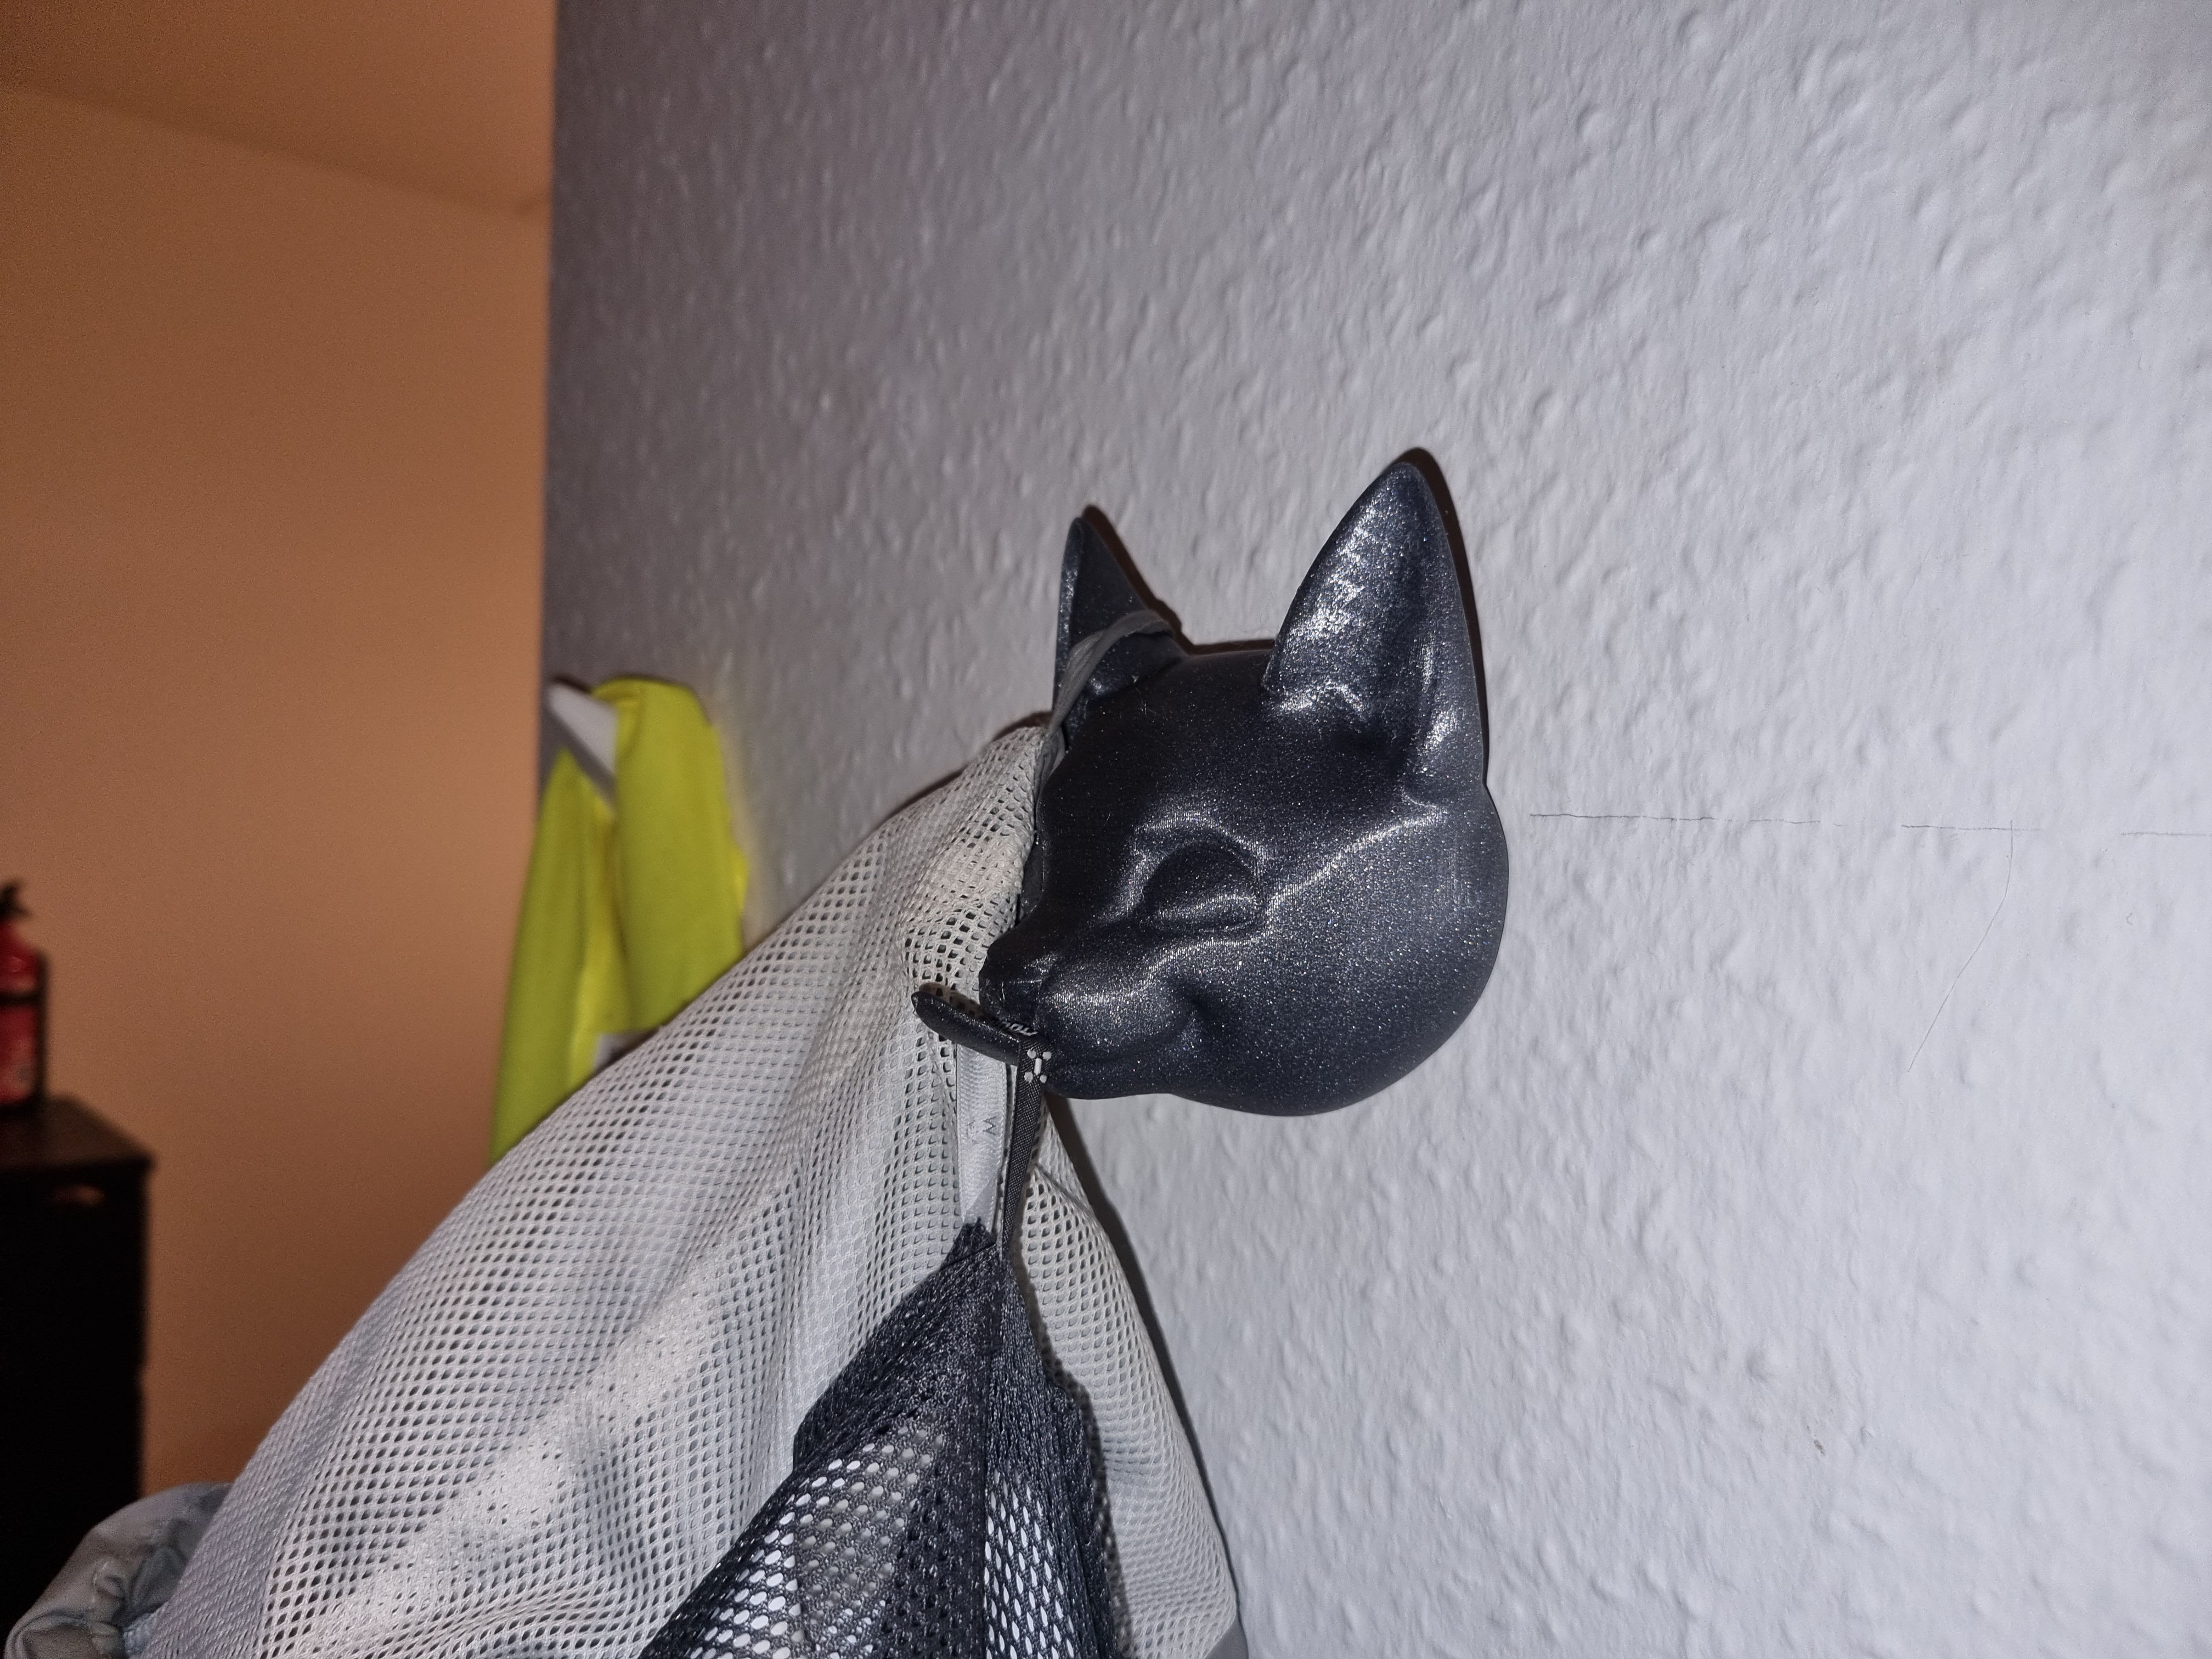 Billy the helpful cat coat hanger